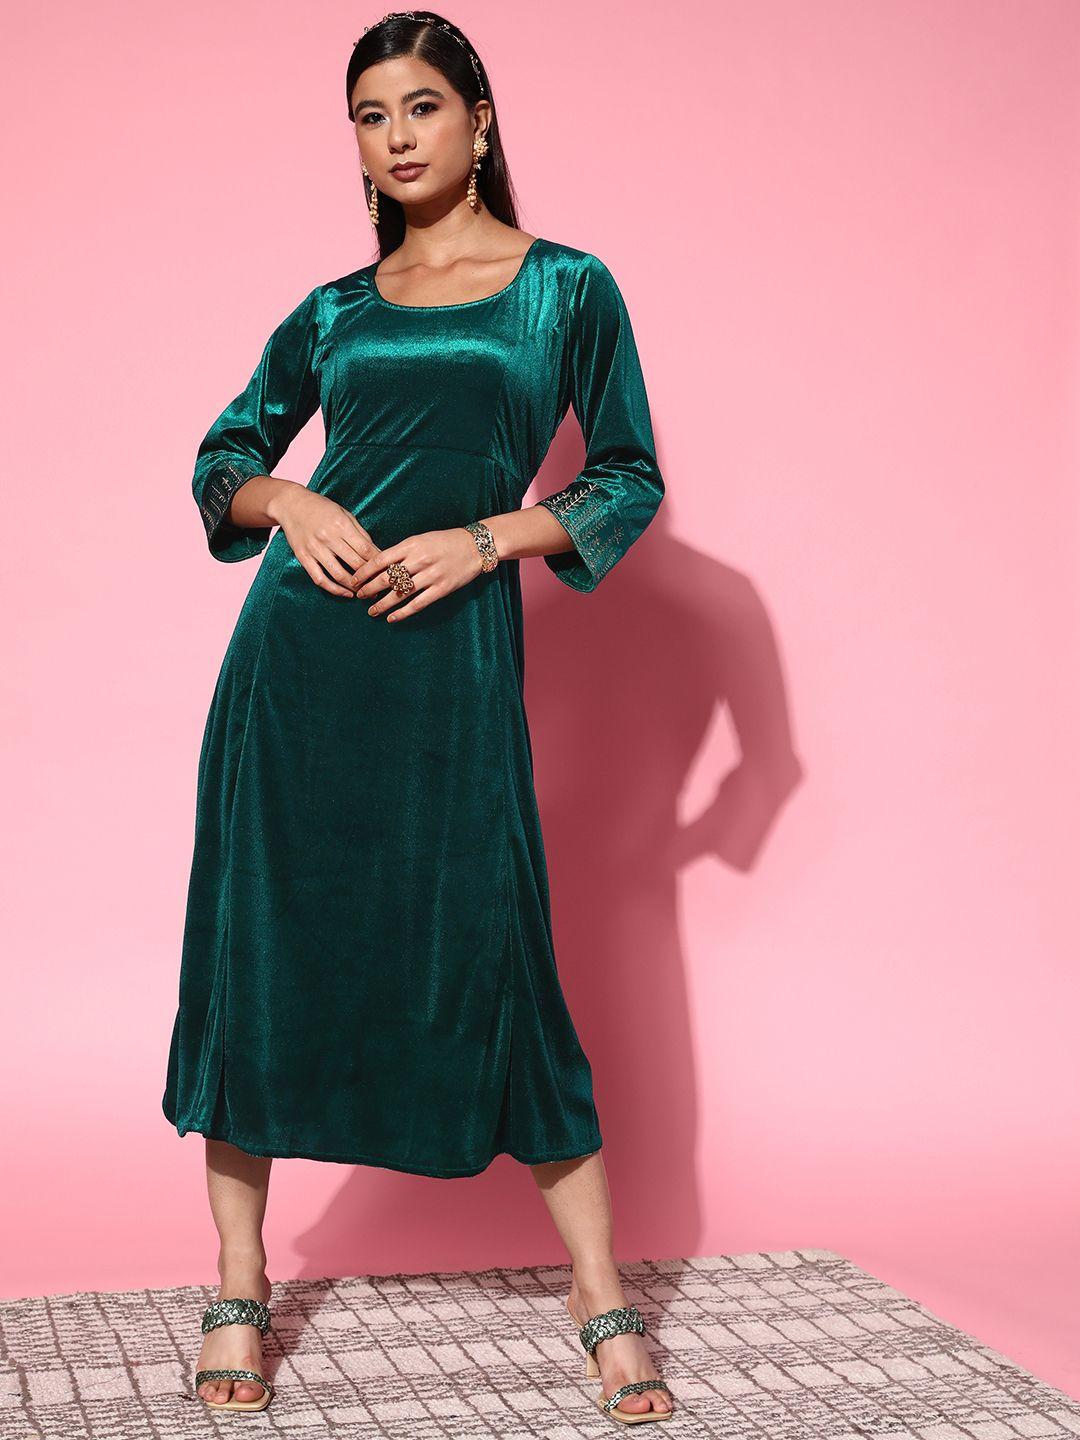 shae by sassafras women tranquil teal solid velvet dress